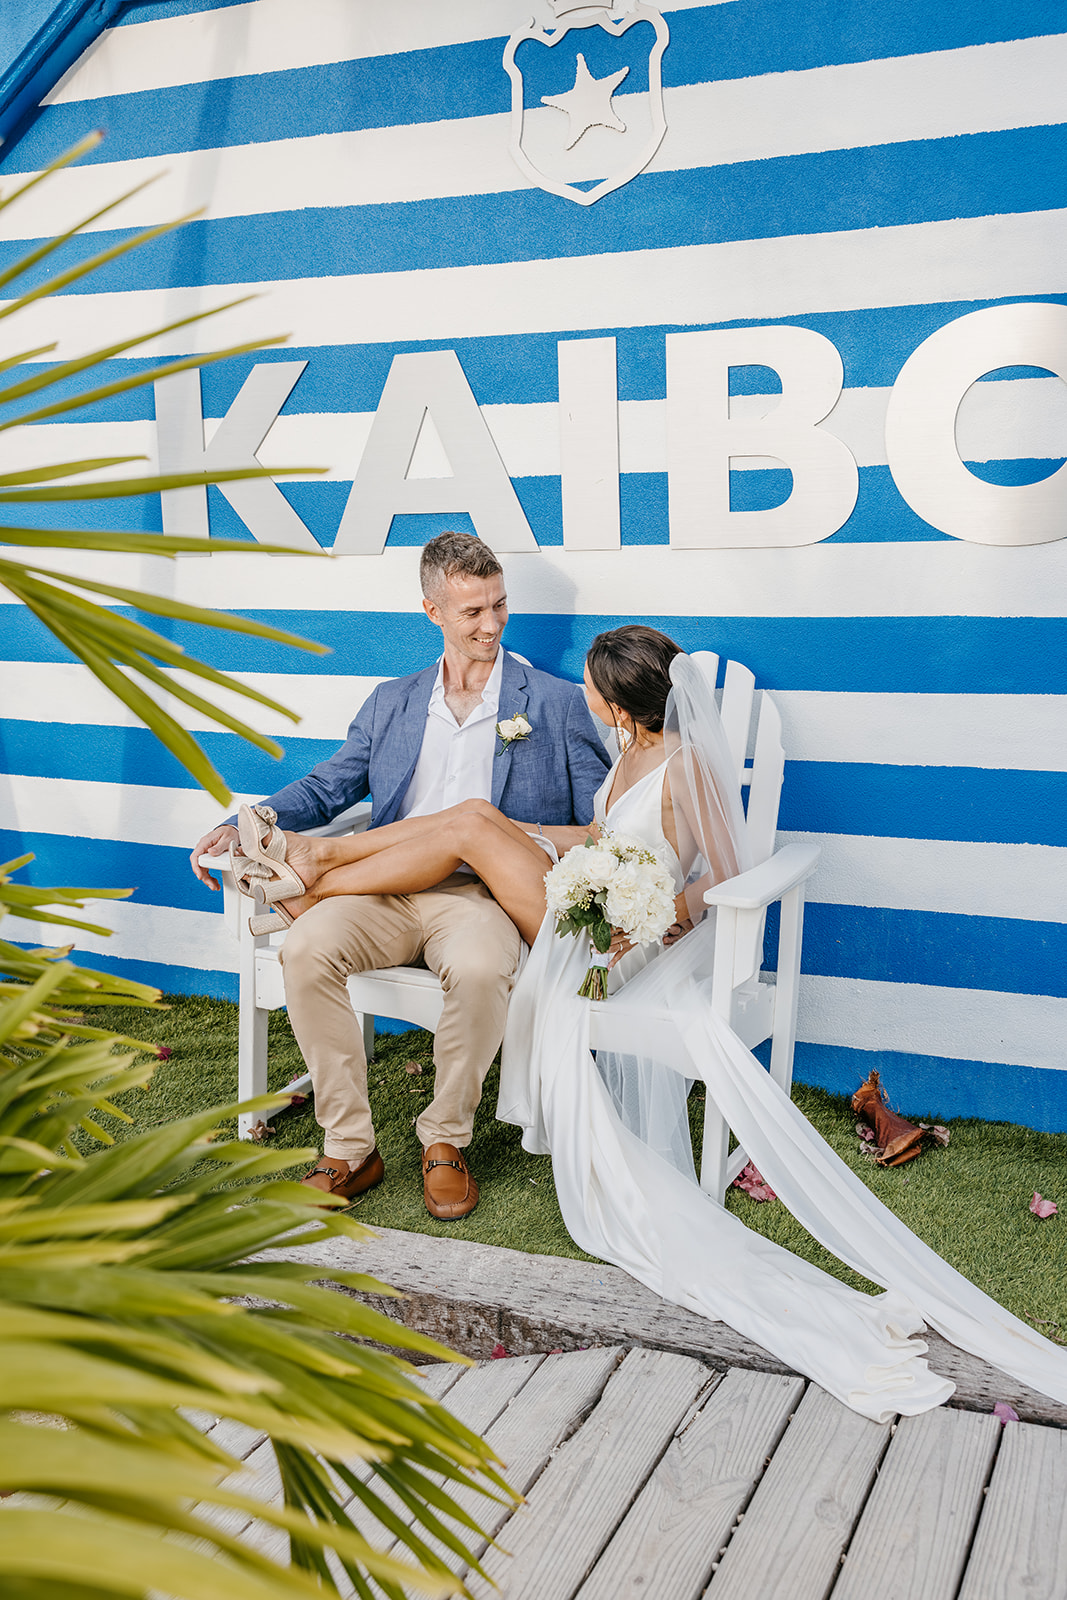 kaibo beach wedding